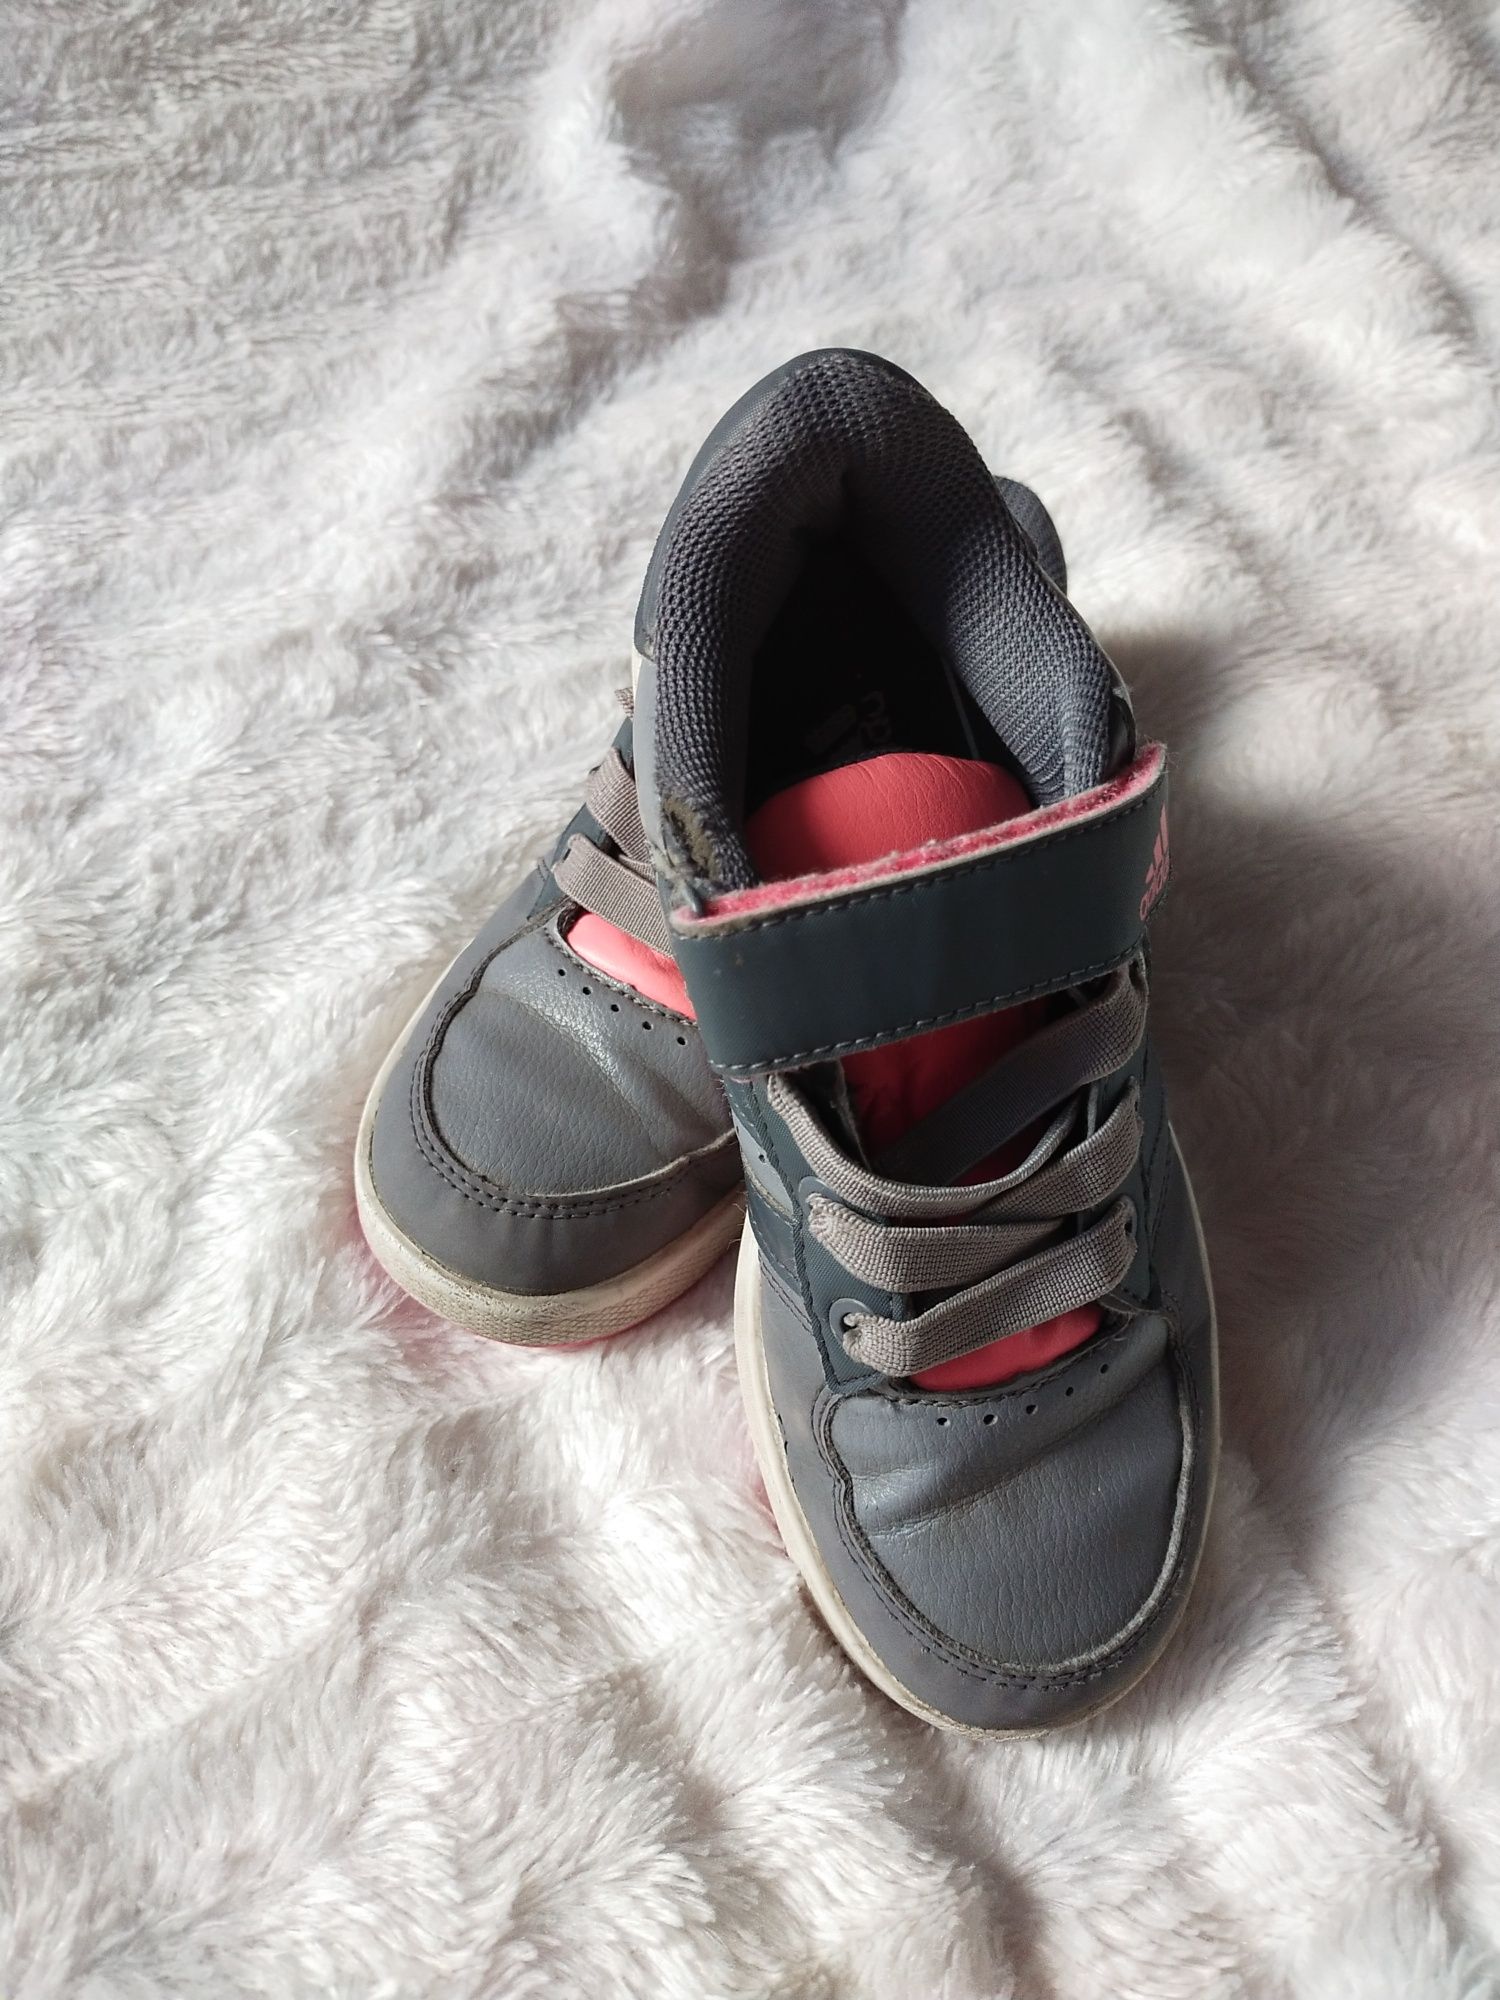 Adidas buty dziewczęce 31 * 20 cm